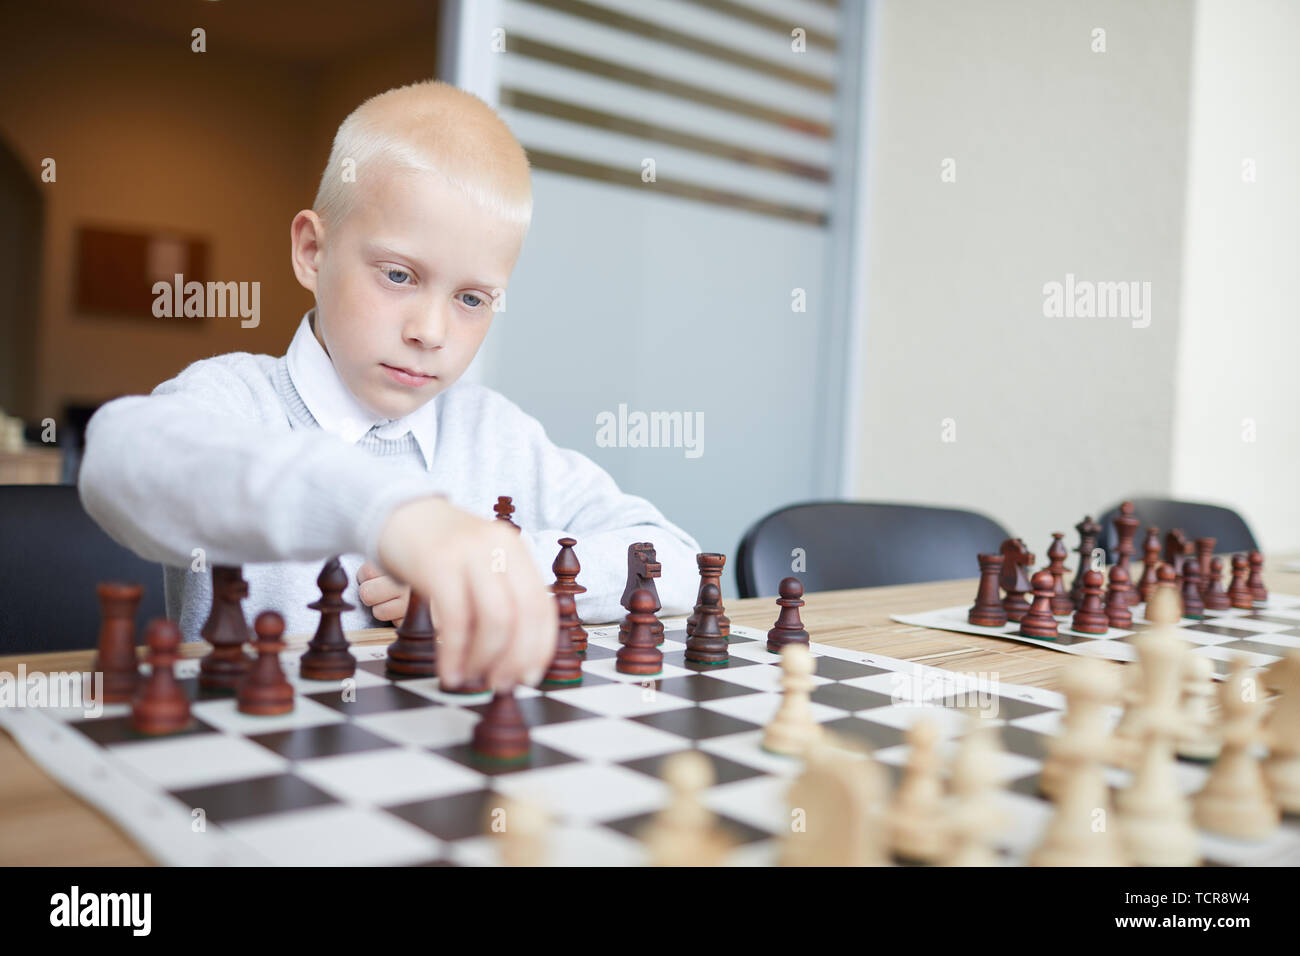 Blonde Schüler in weißem Hemd, erste Schach bewegen im Spiel mit imaginären Gegner Stockfoto